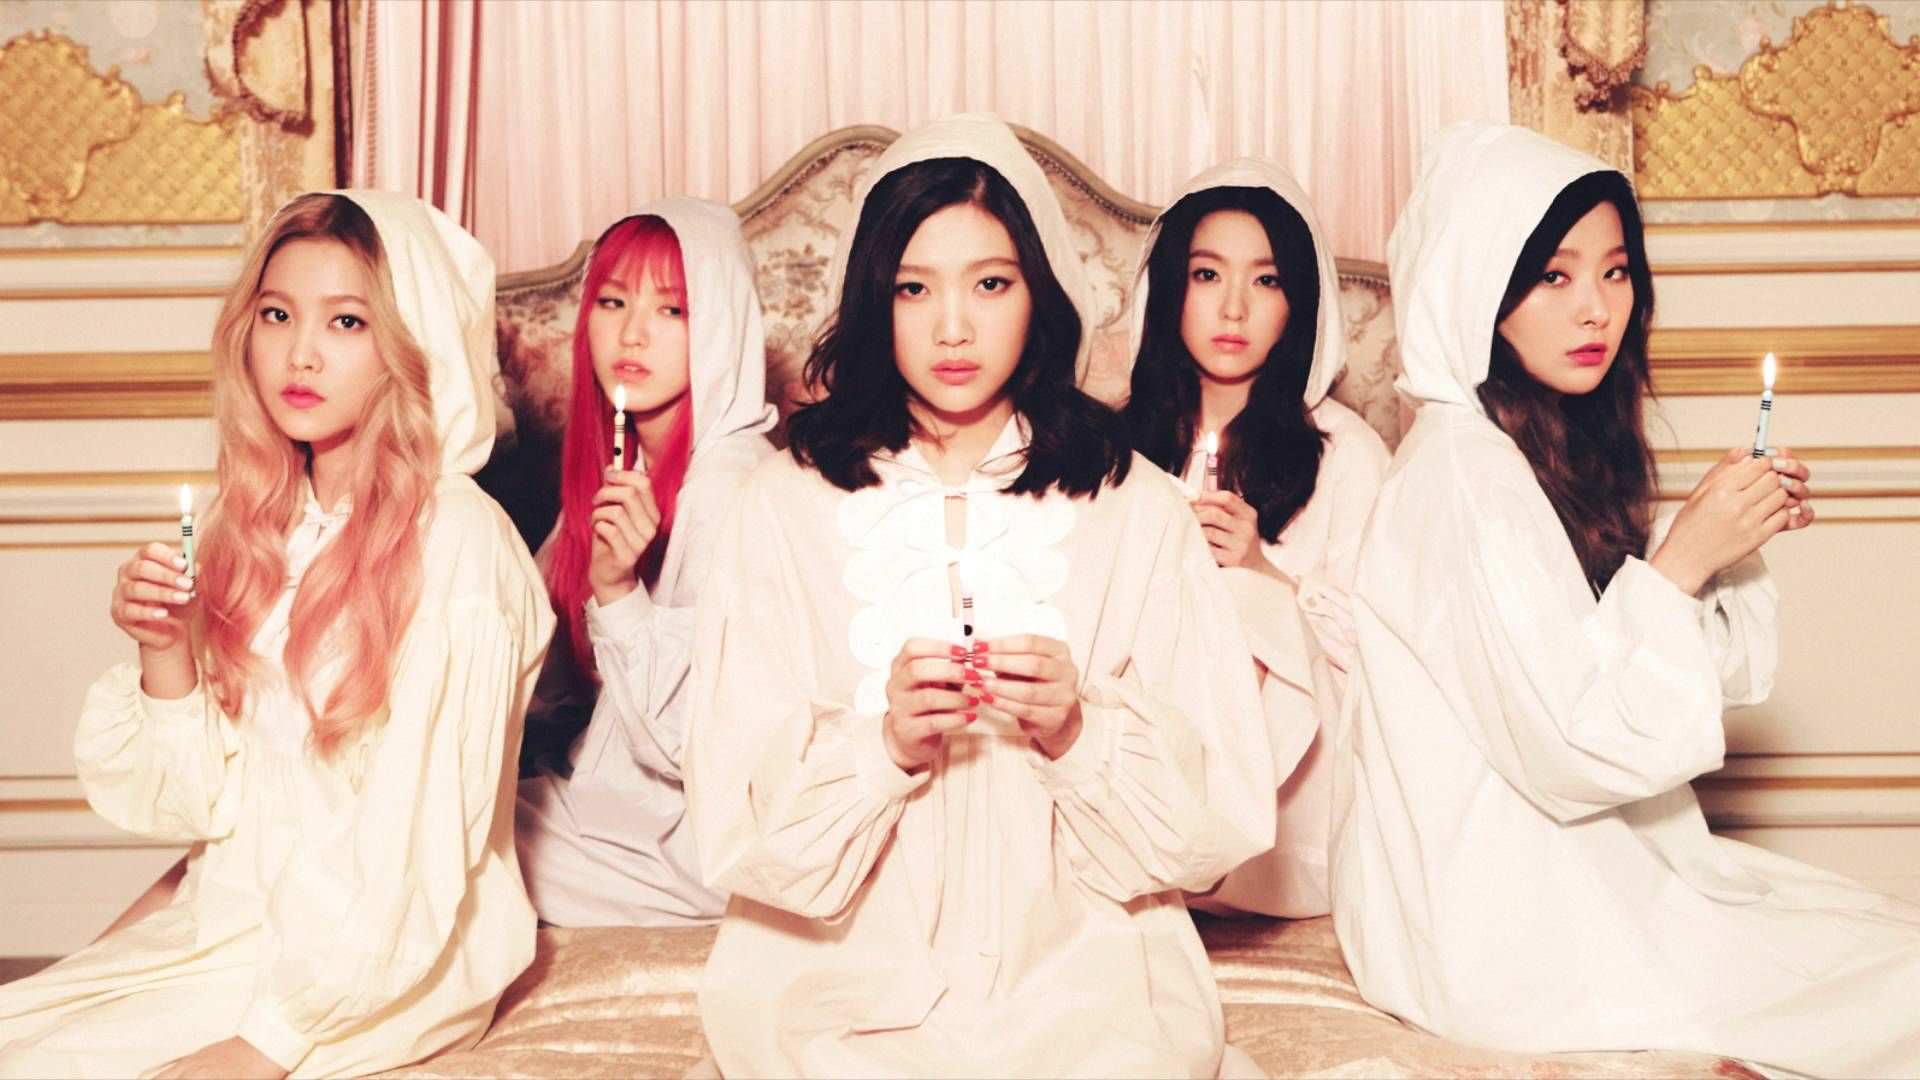 Anyone has 1080p wallpaper of Red Velvet?